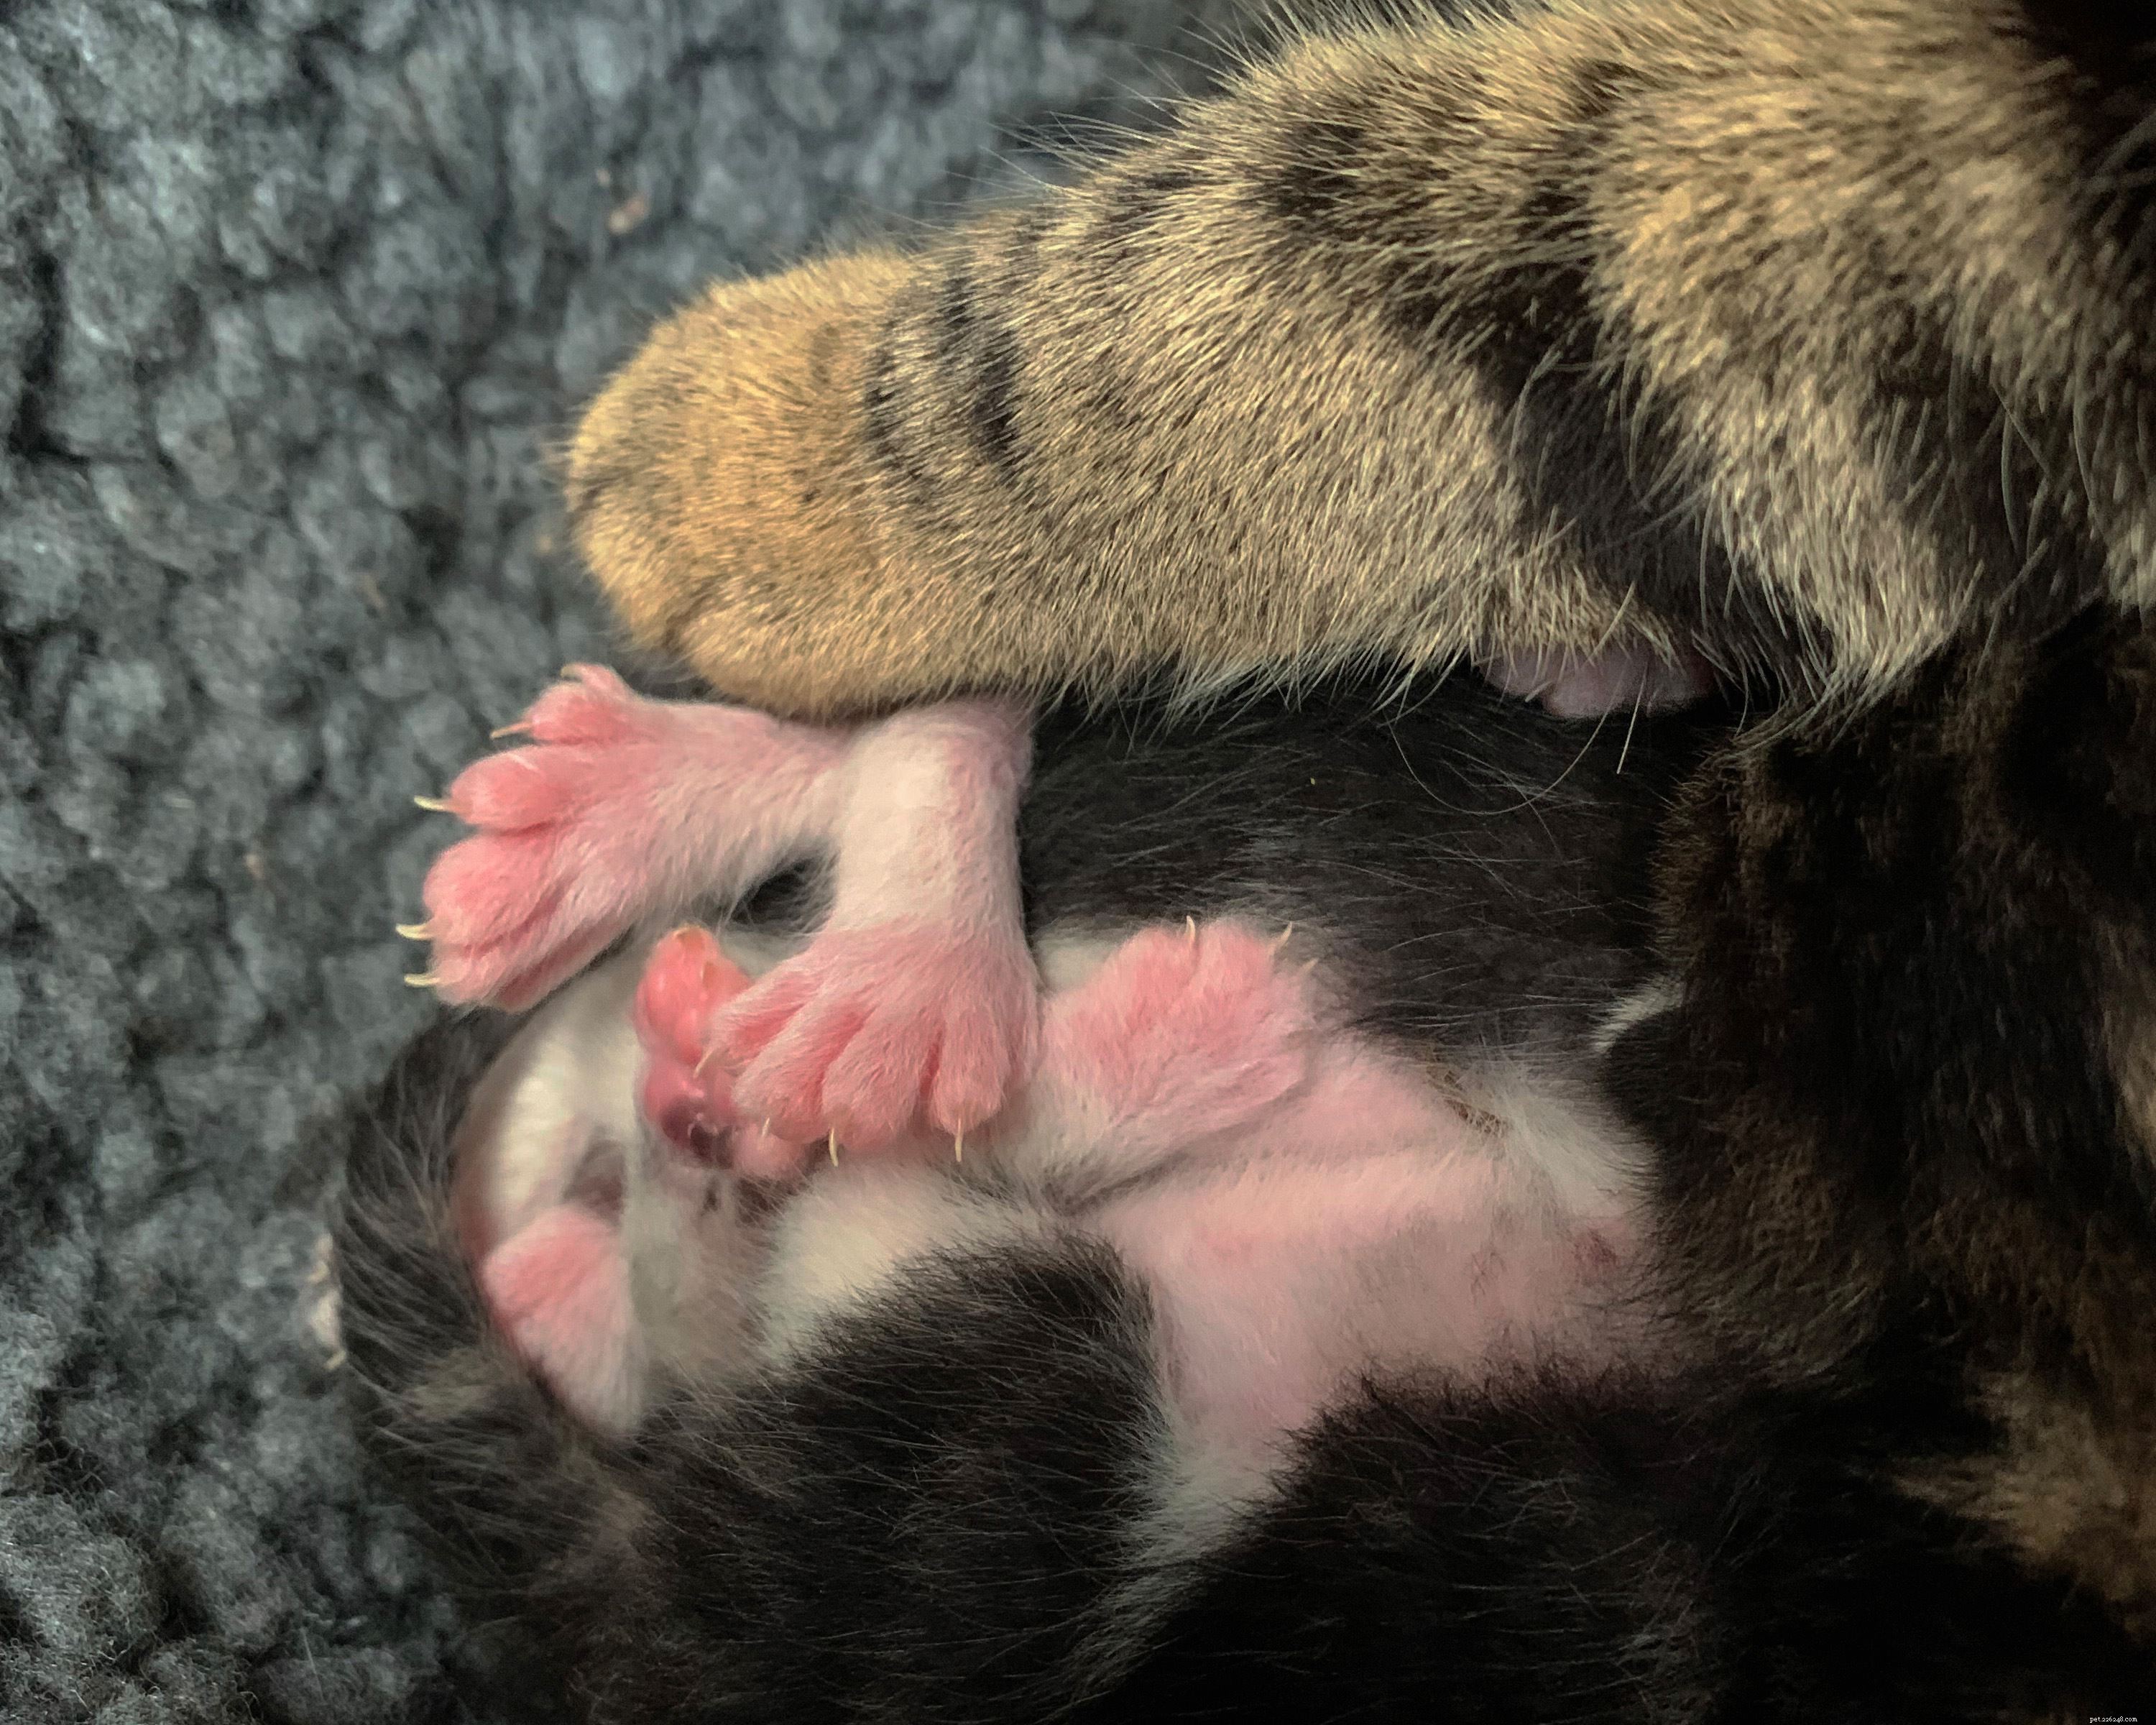 En trio kattungar i Gosport har fötts med superstora polydaktyltassar